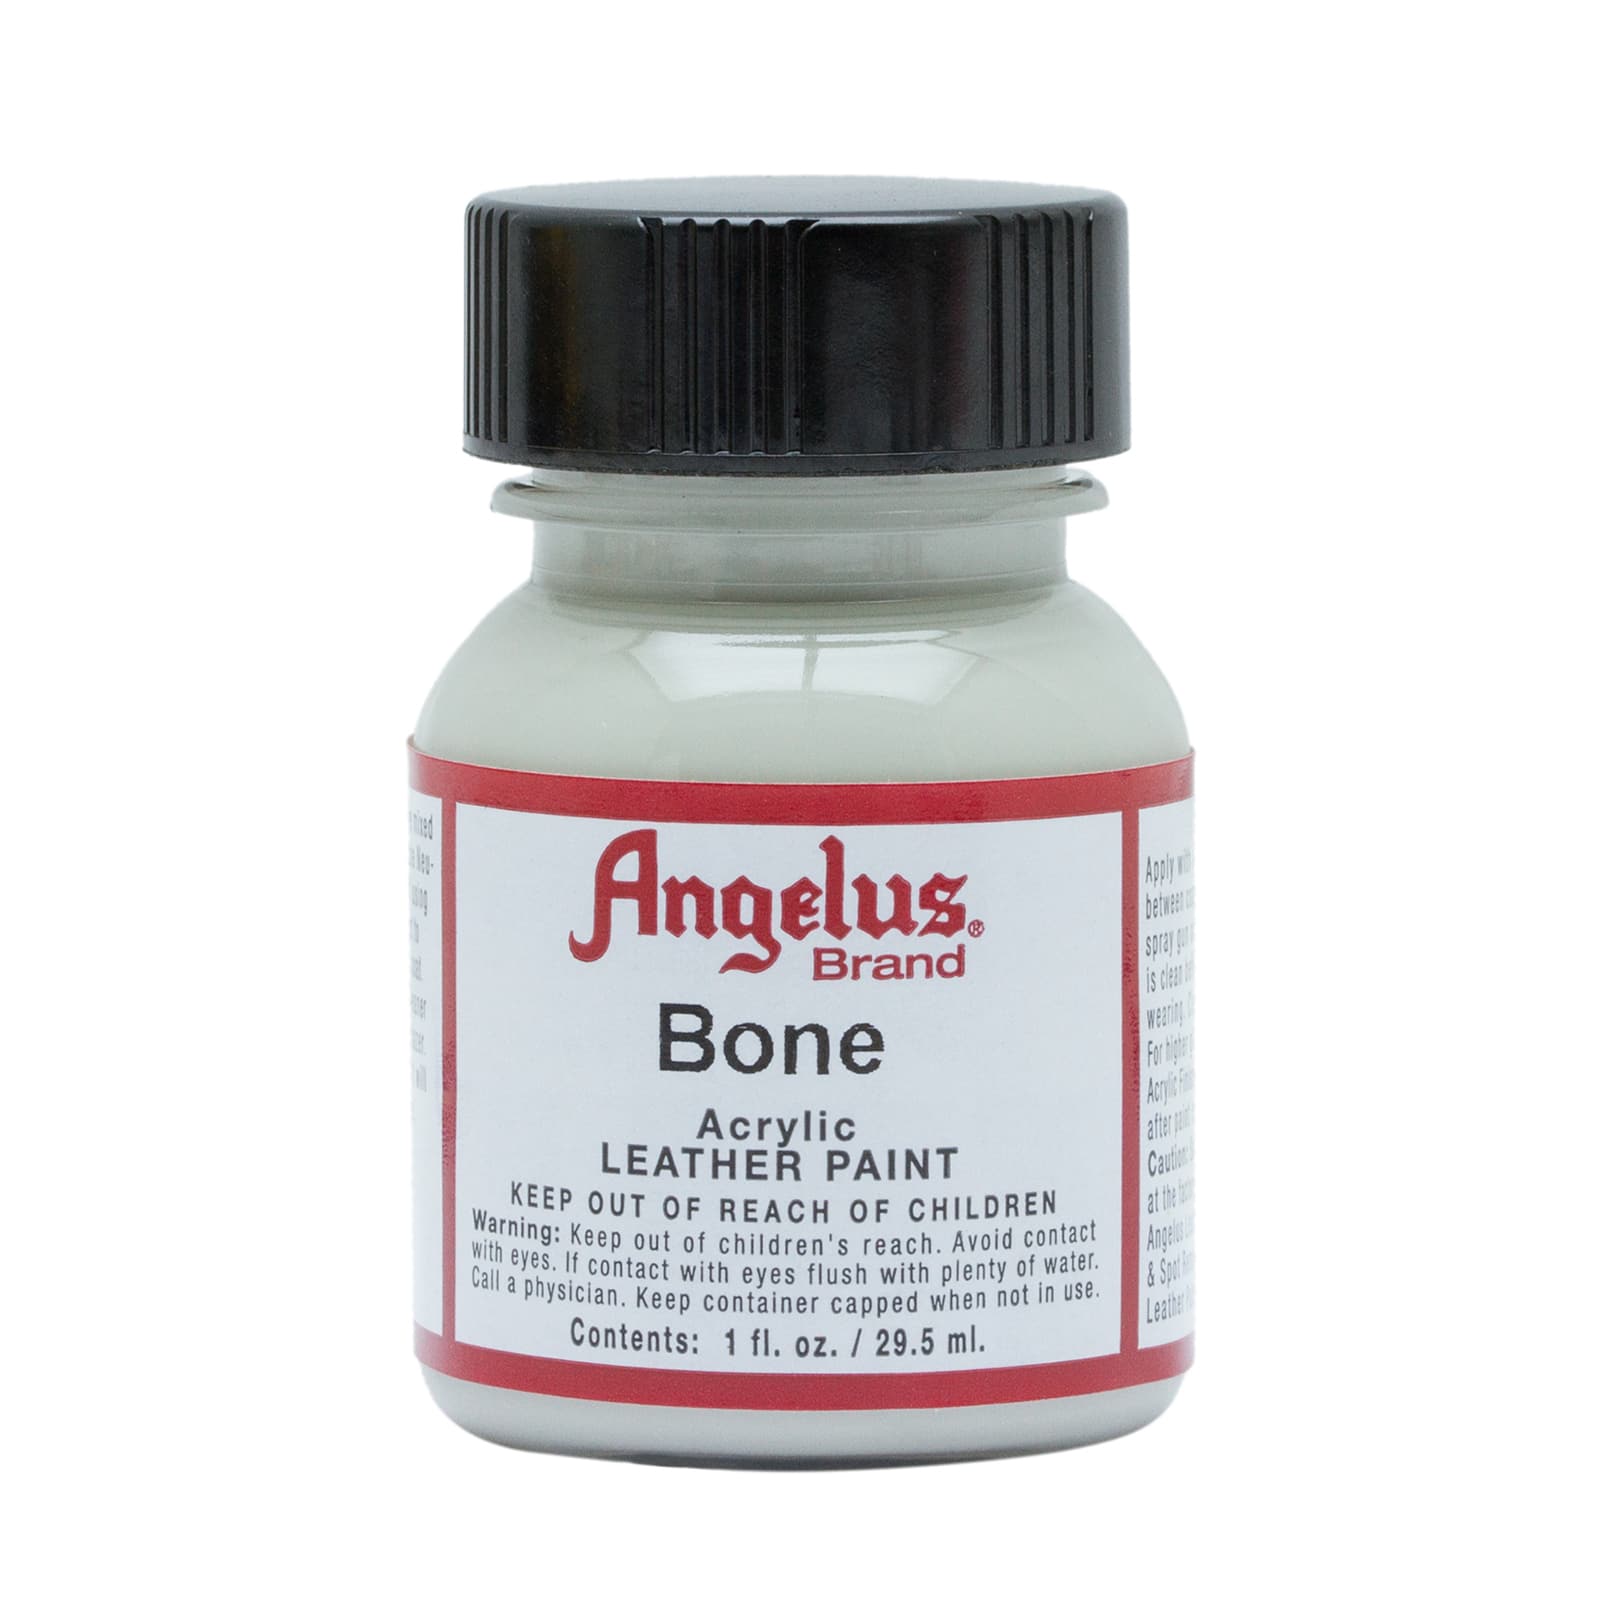 Angelus Acrylic Leather Paint - Bone, 1 oz